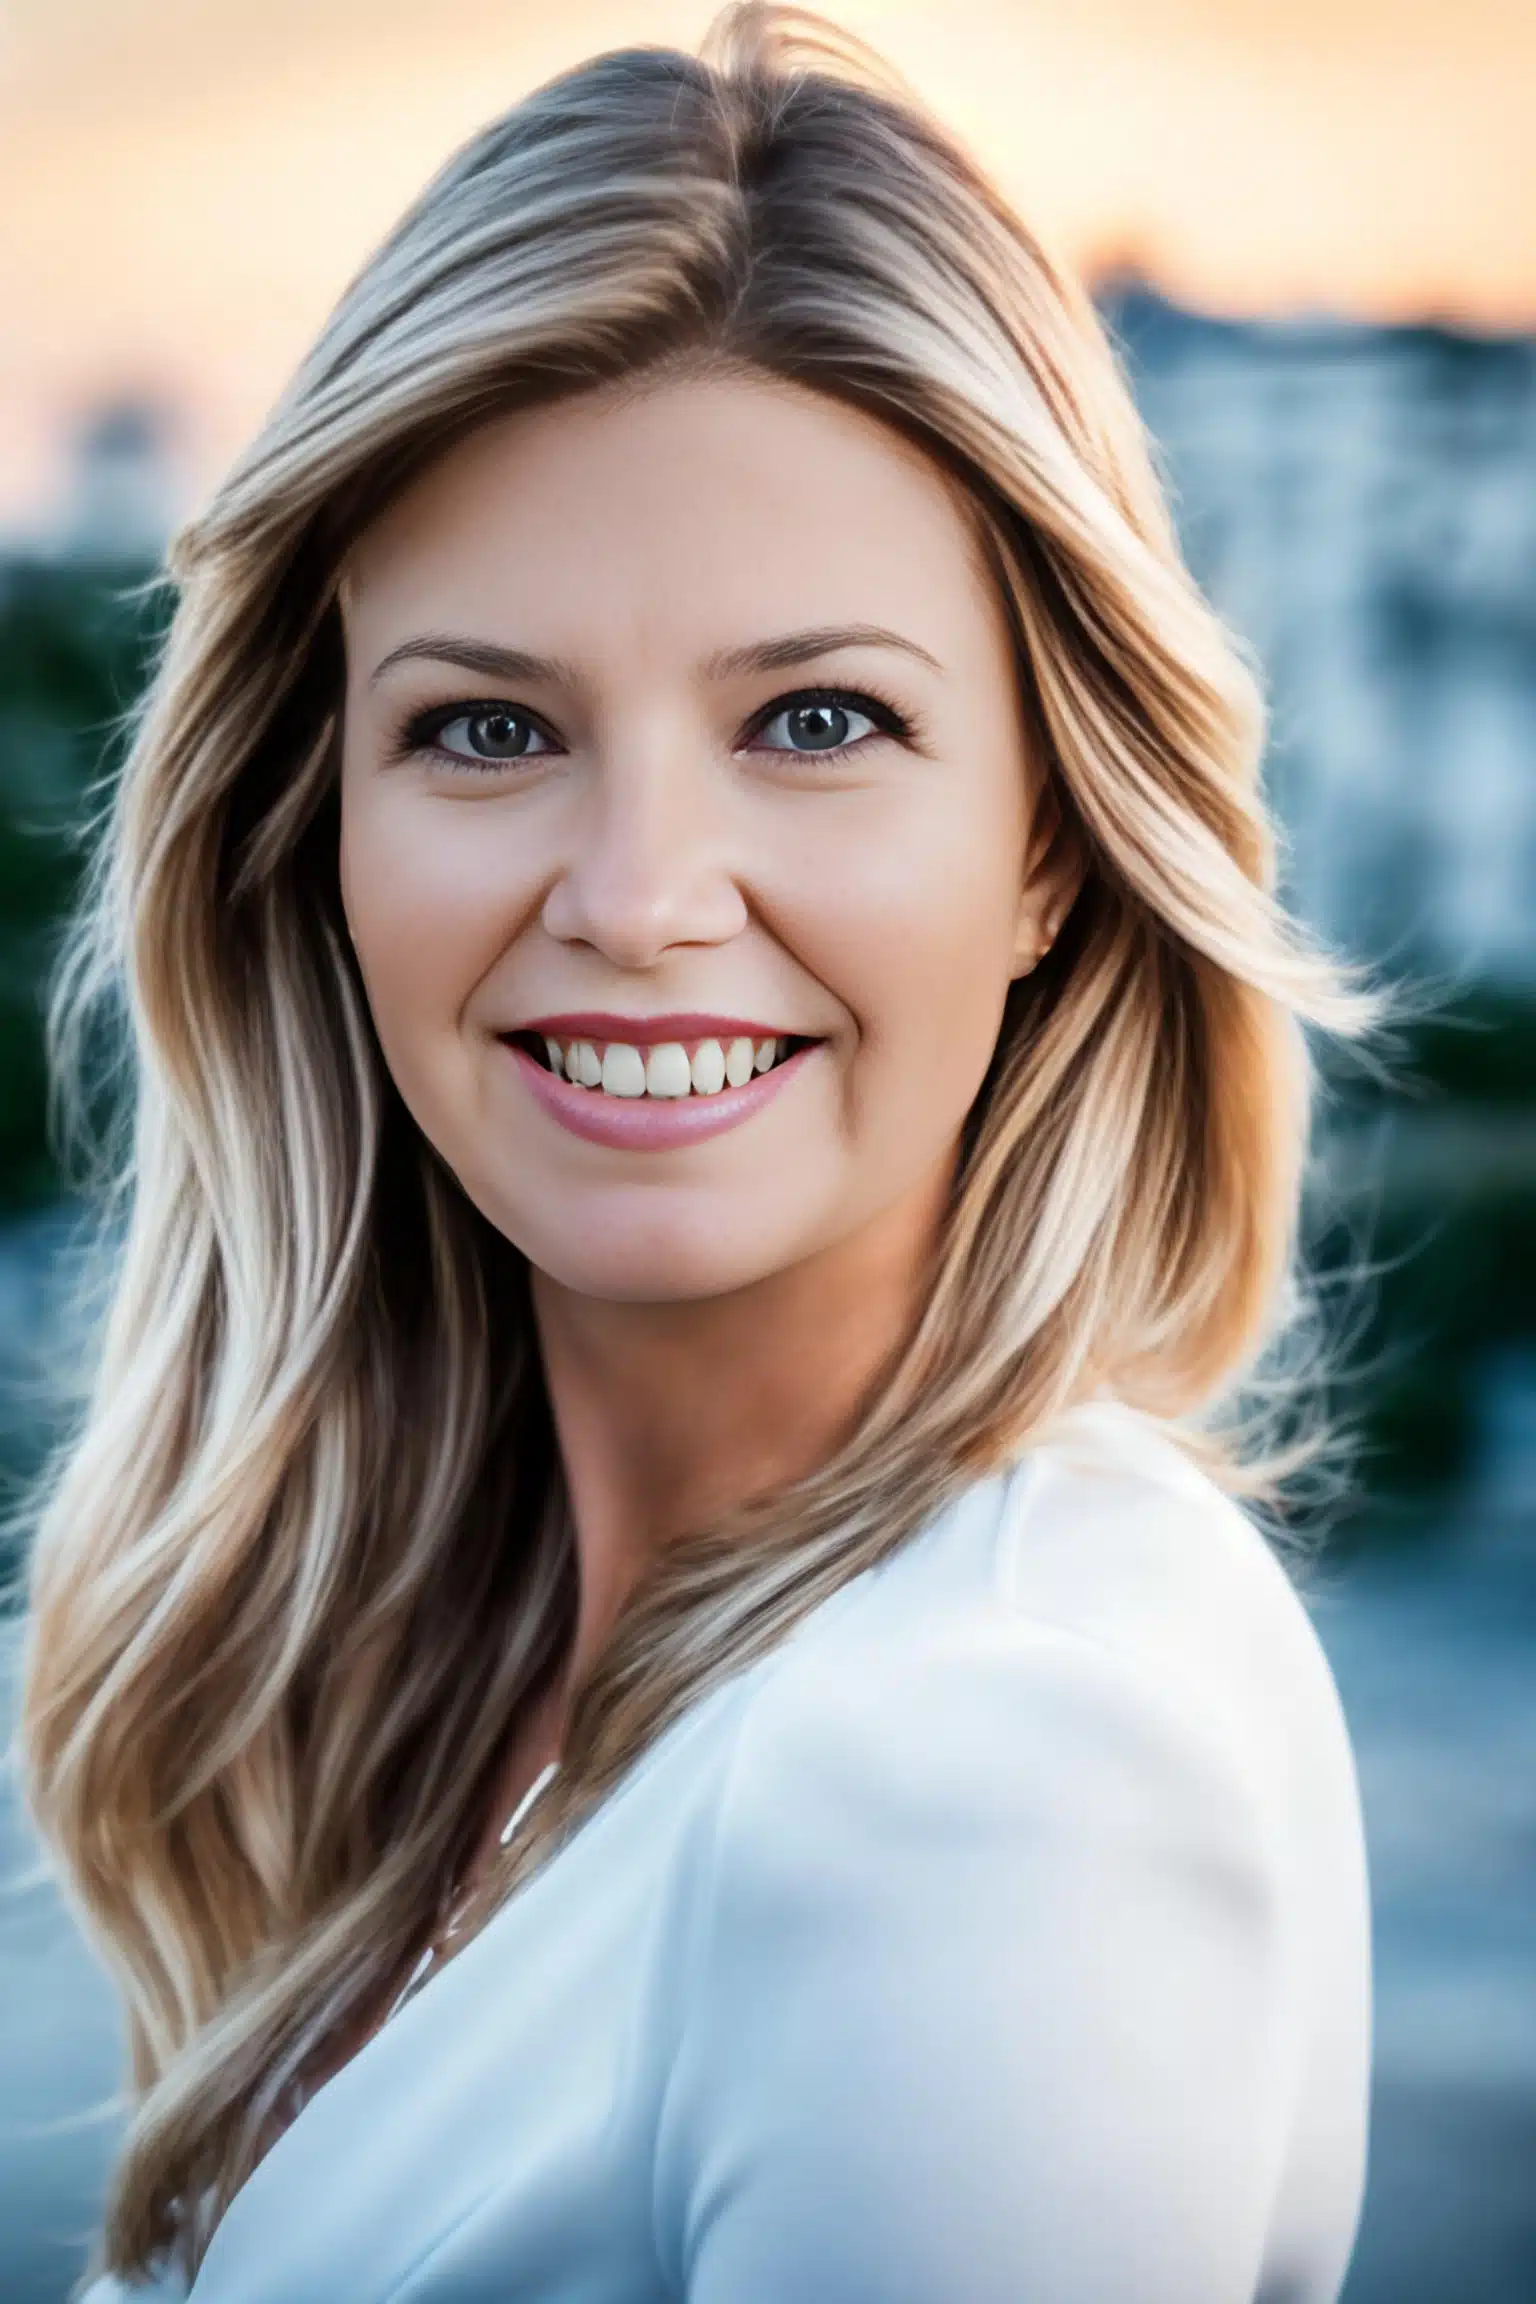 Portret Edyty Szematowicz, współwłaścicielki Megaland, uśmiechnięta kobieta o jasnych blond włosach, w białej bluzce, na tle rozmytego miasta o zachodzie słońca.